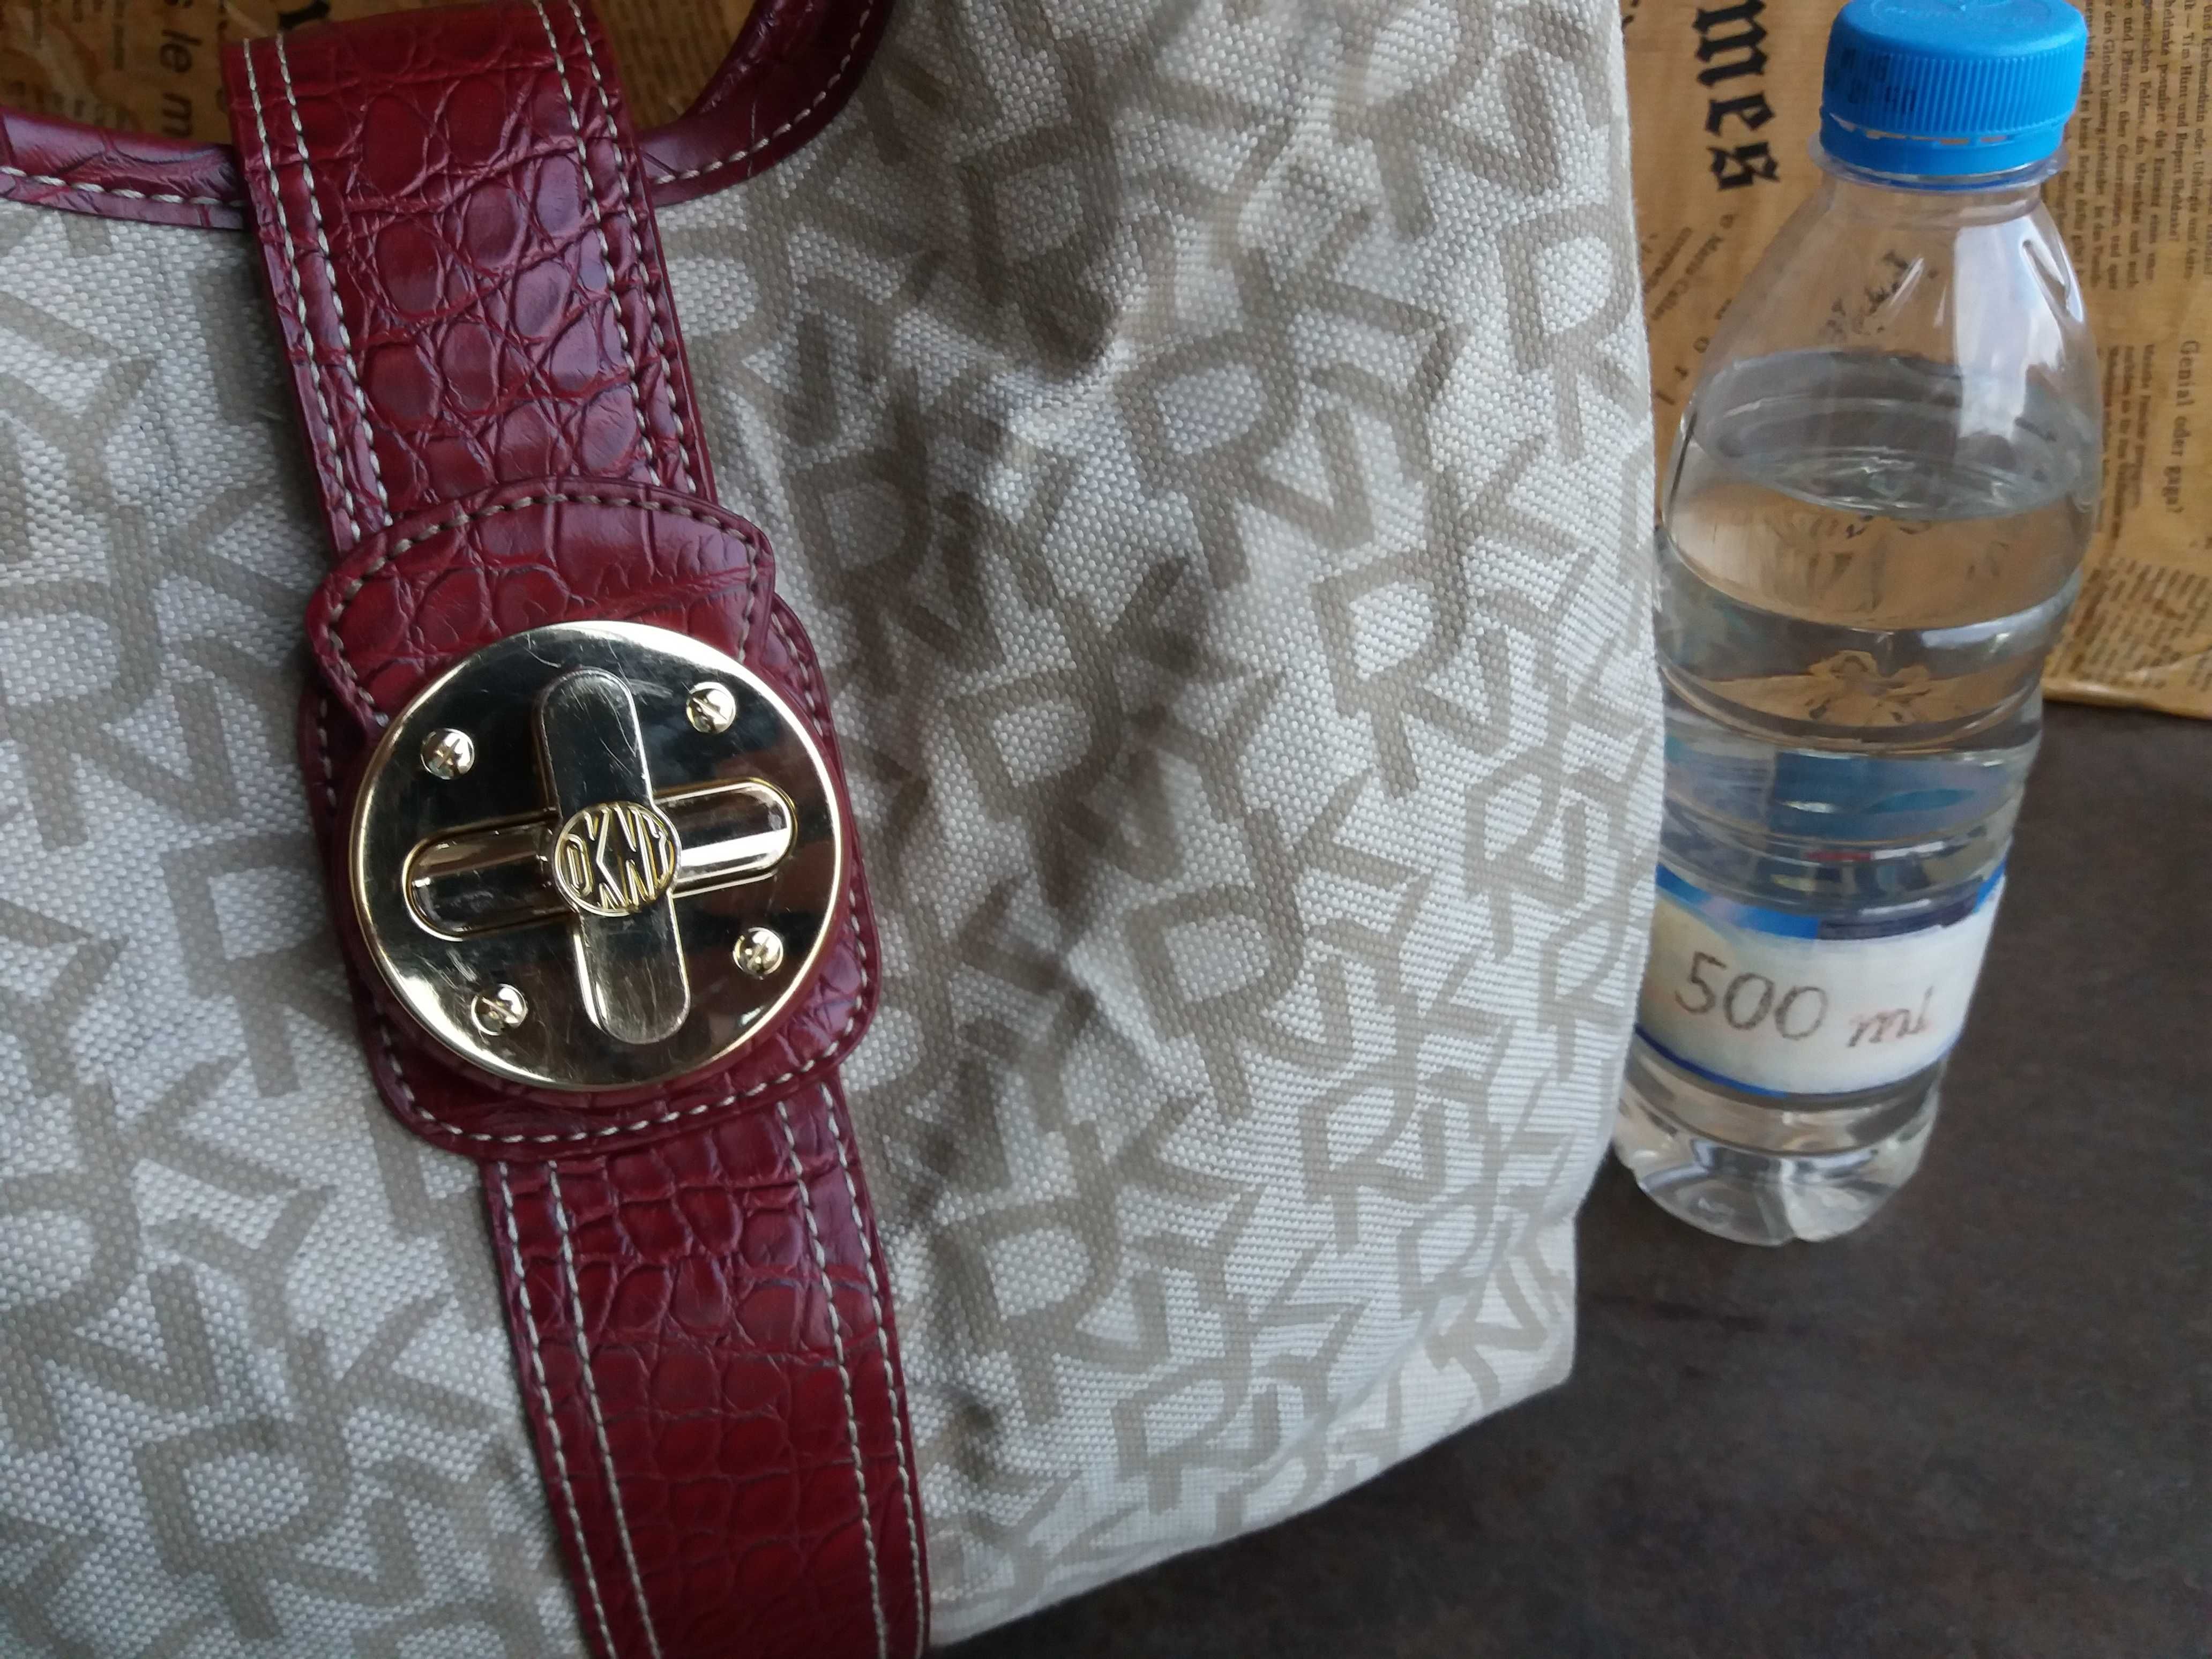 DKNY-като Нова!бежова текстилна чанта,дона карън